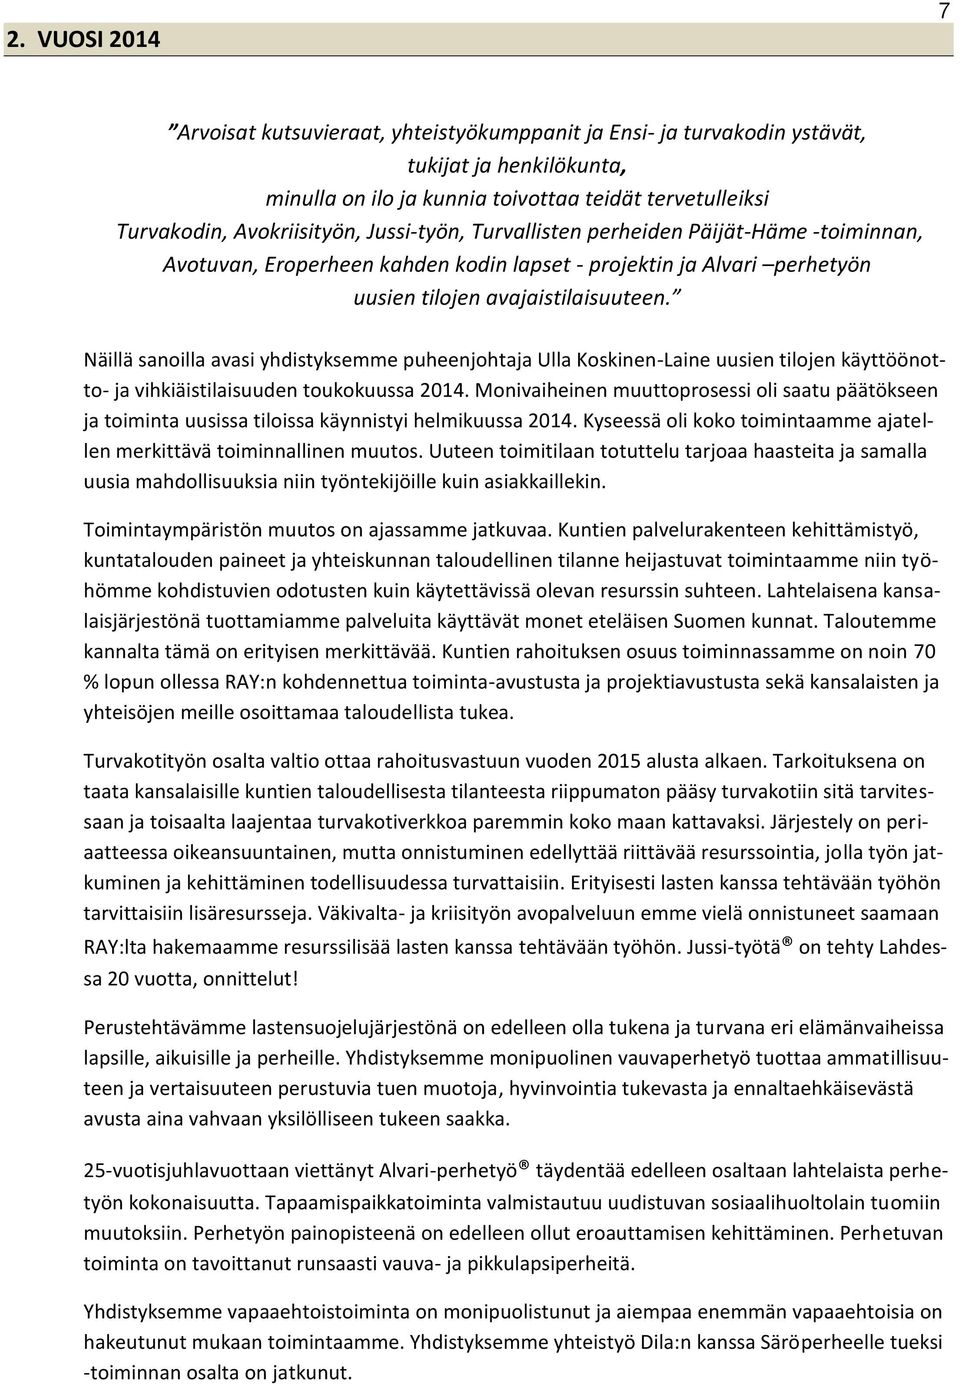 Näillä sanoilla avasi yhdistyksemme puheenjohtaja Ulla Koskinen-Laine uusien tilojen käyttöönotto- ja vihkiäistilaisuuden toukokuussa 2014.